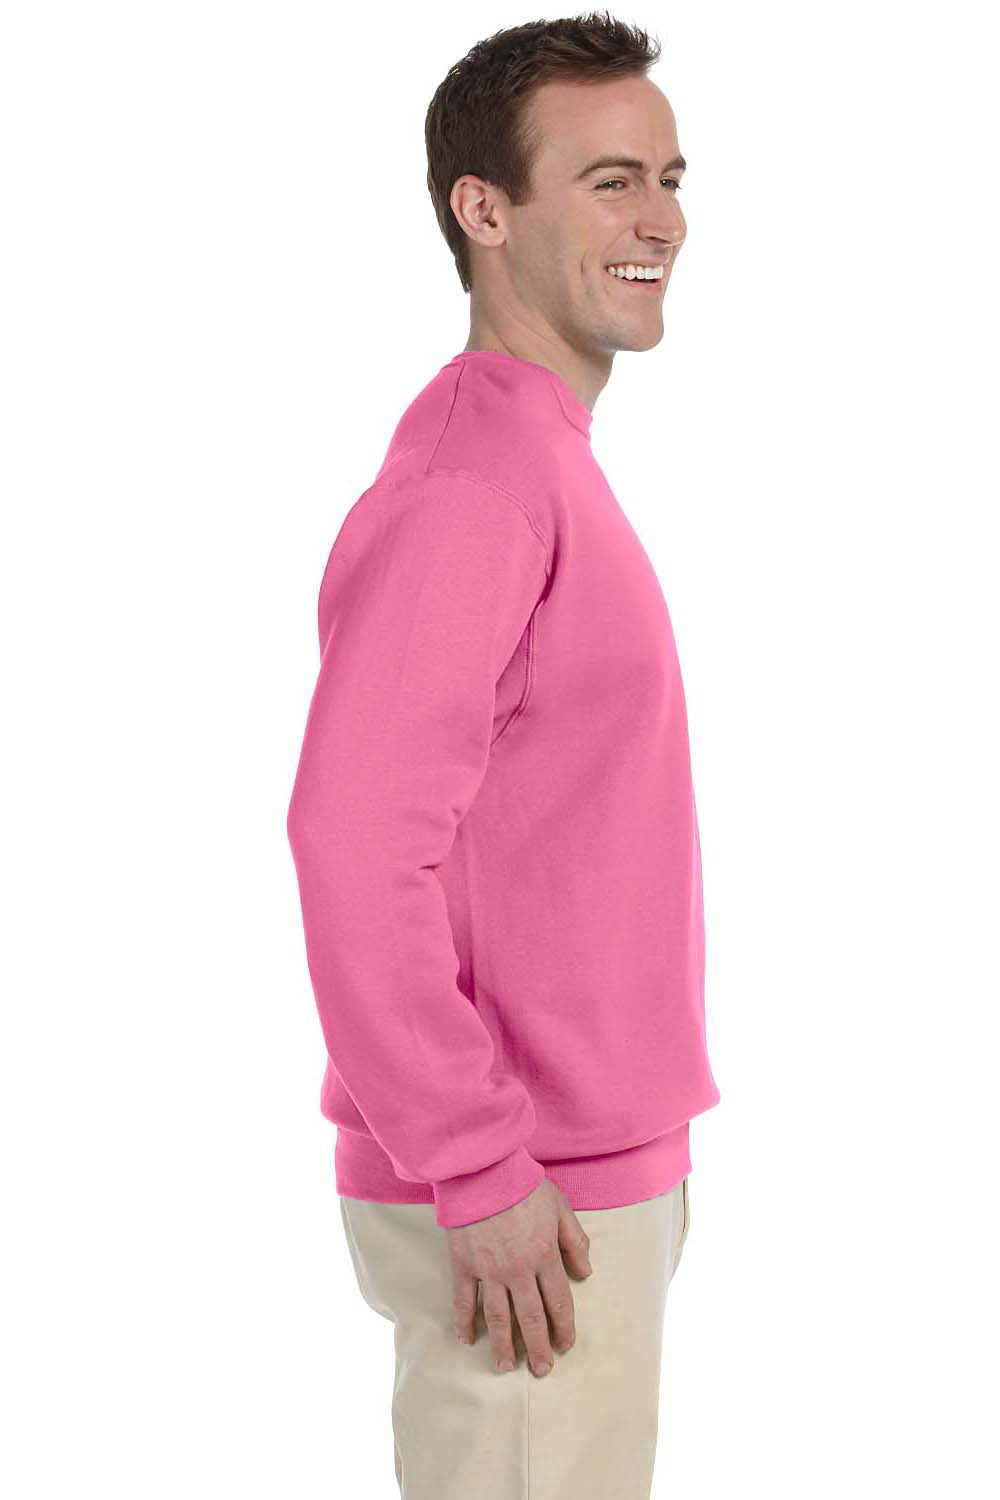 Jerzees 562 Mens NuBlend Fleece Crewneck Sweatshirt Neon Pink Side